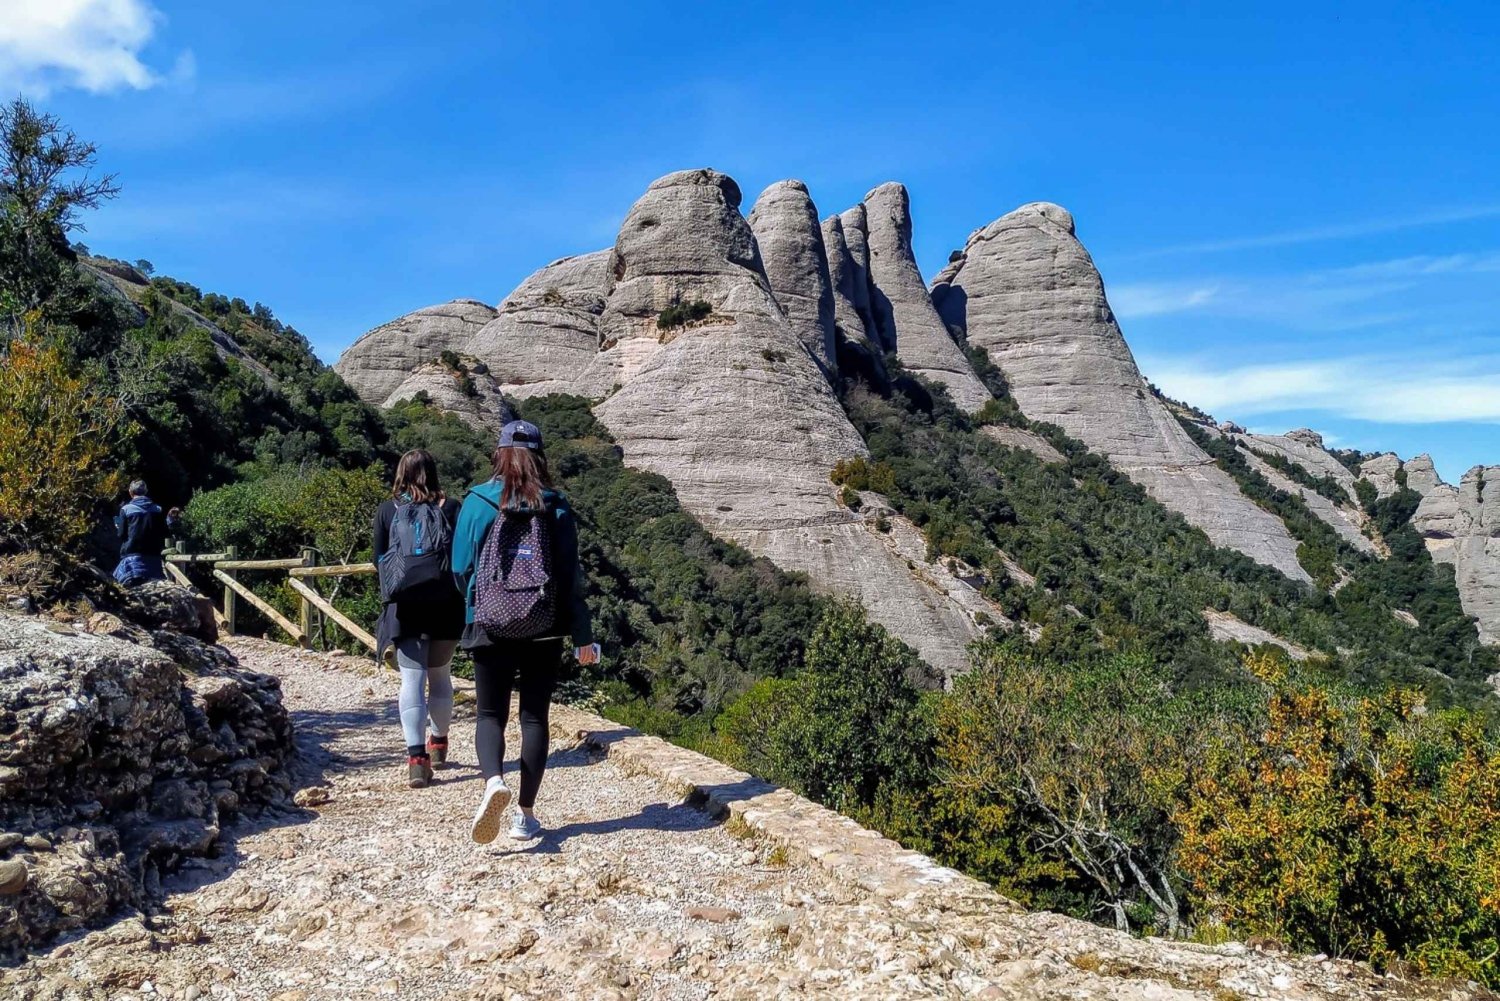 Da Barcellona: Escursione panoramica e tour del monastero di Montserrat